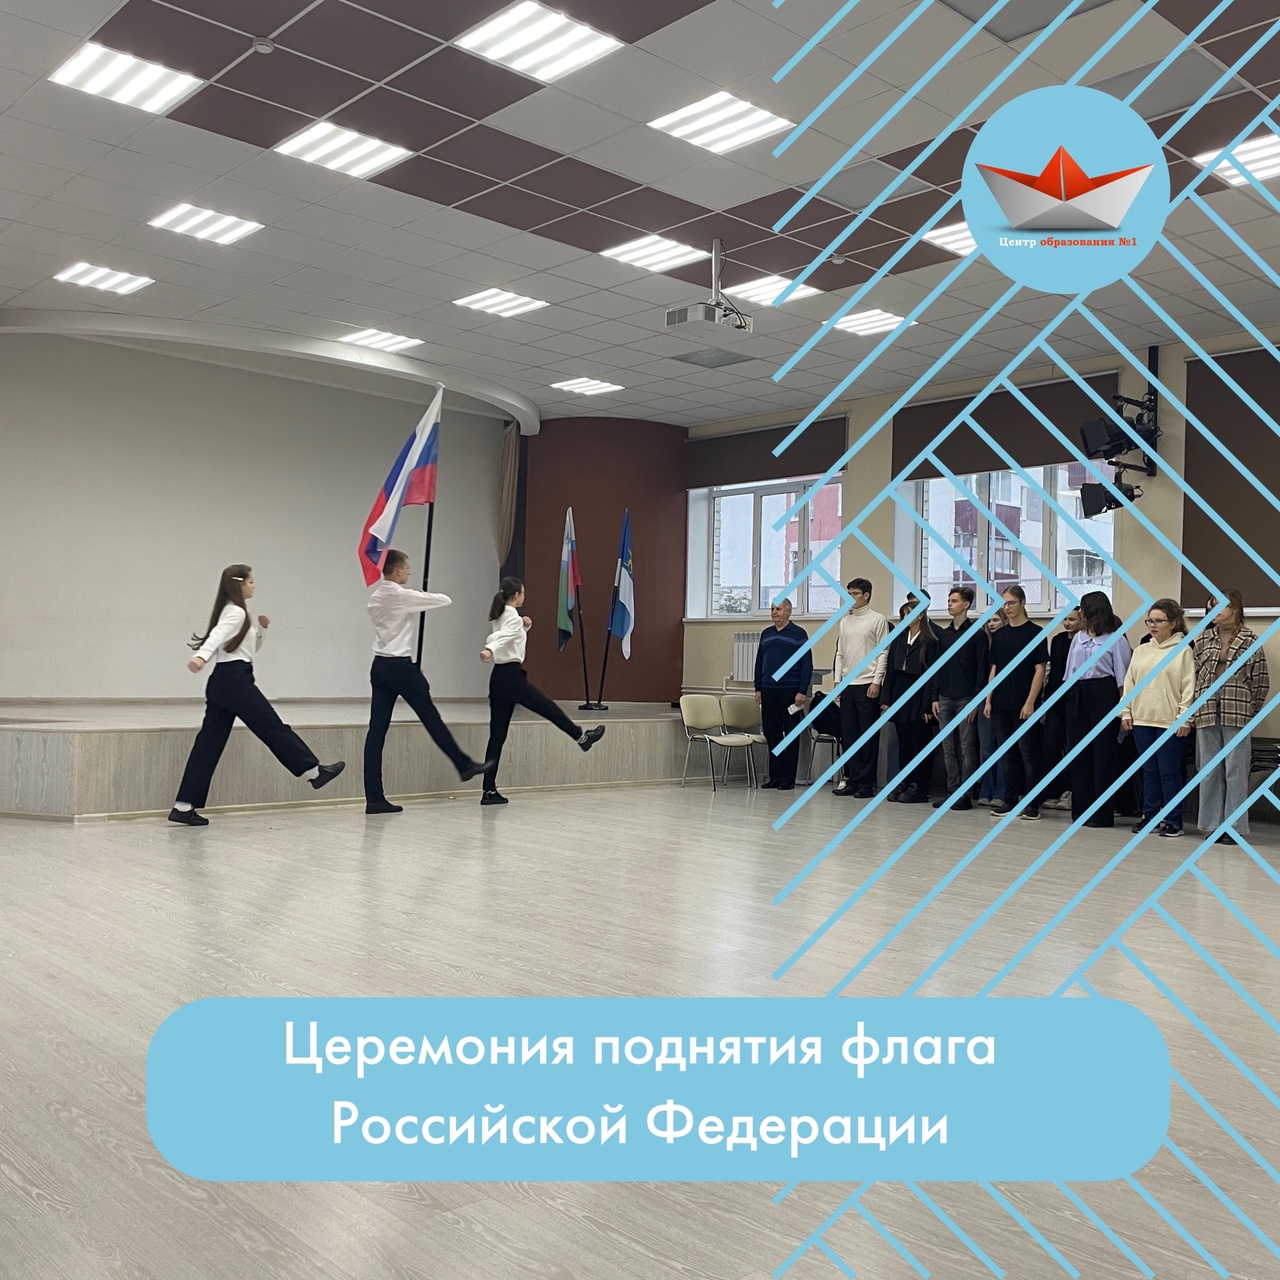 Учебная неделя в Центре началась с Церемонии поднятия флага России!.